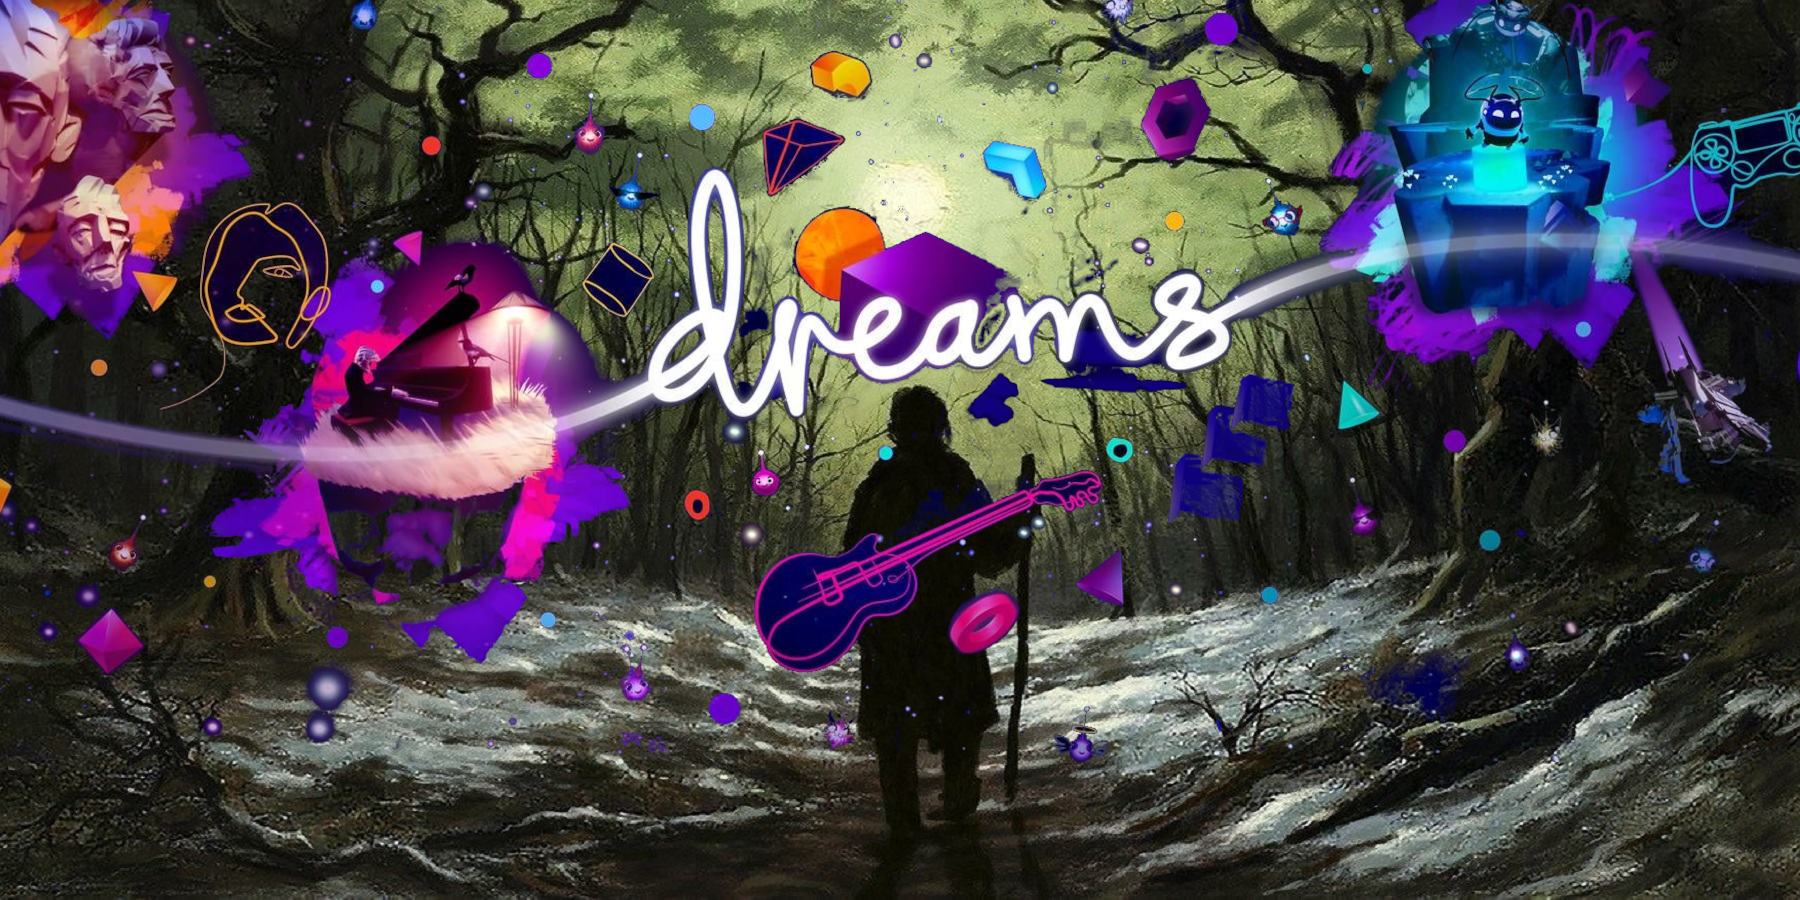 dreams 3 edit